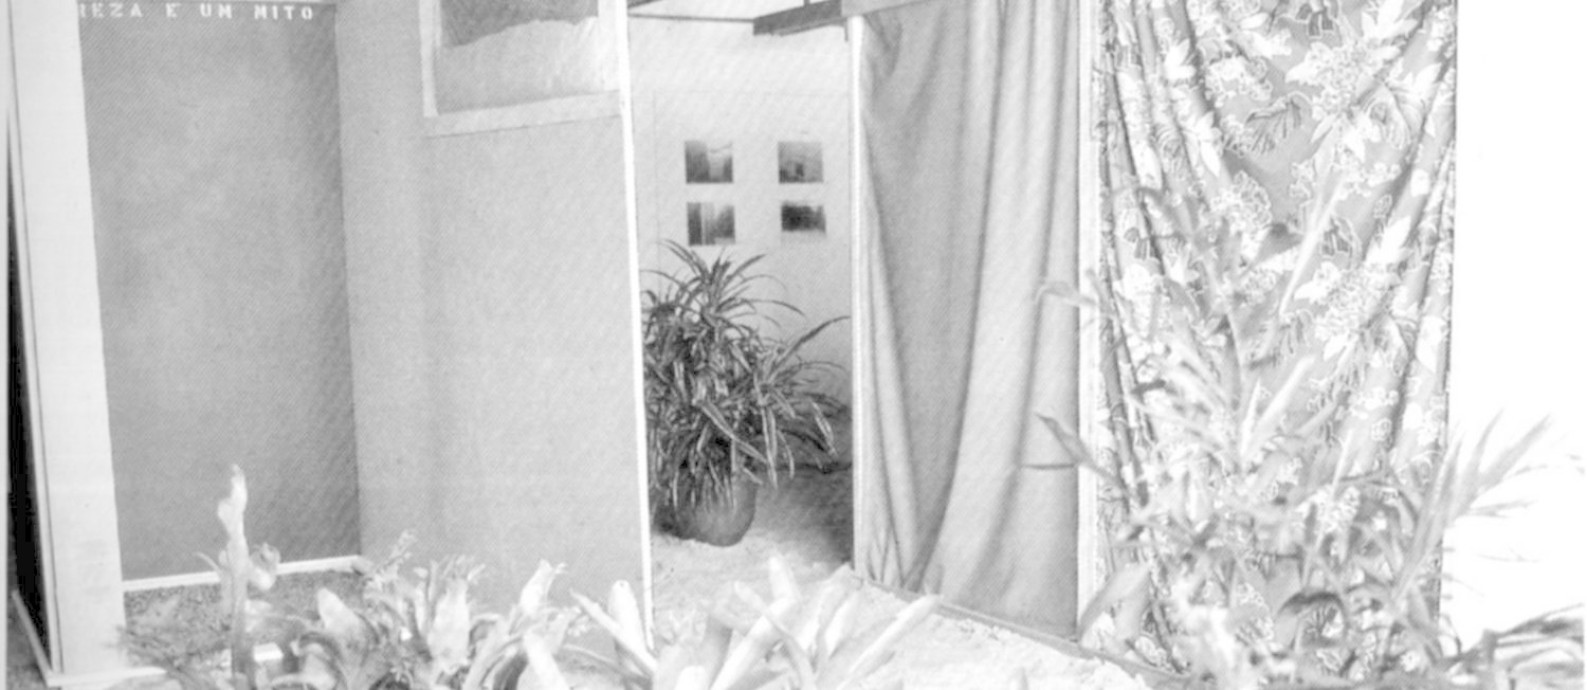 Obra 'Tropicália', de Hélio Oiticica, montada na exposição 'Nova objetividade brasileira', em abril de 1967 Foto: DIVULGAÇÃO / DIVULGAÇÃO